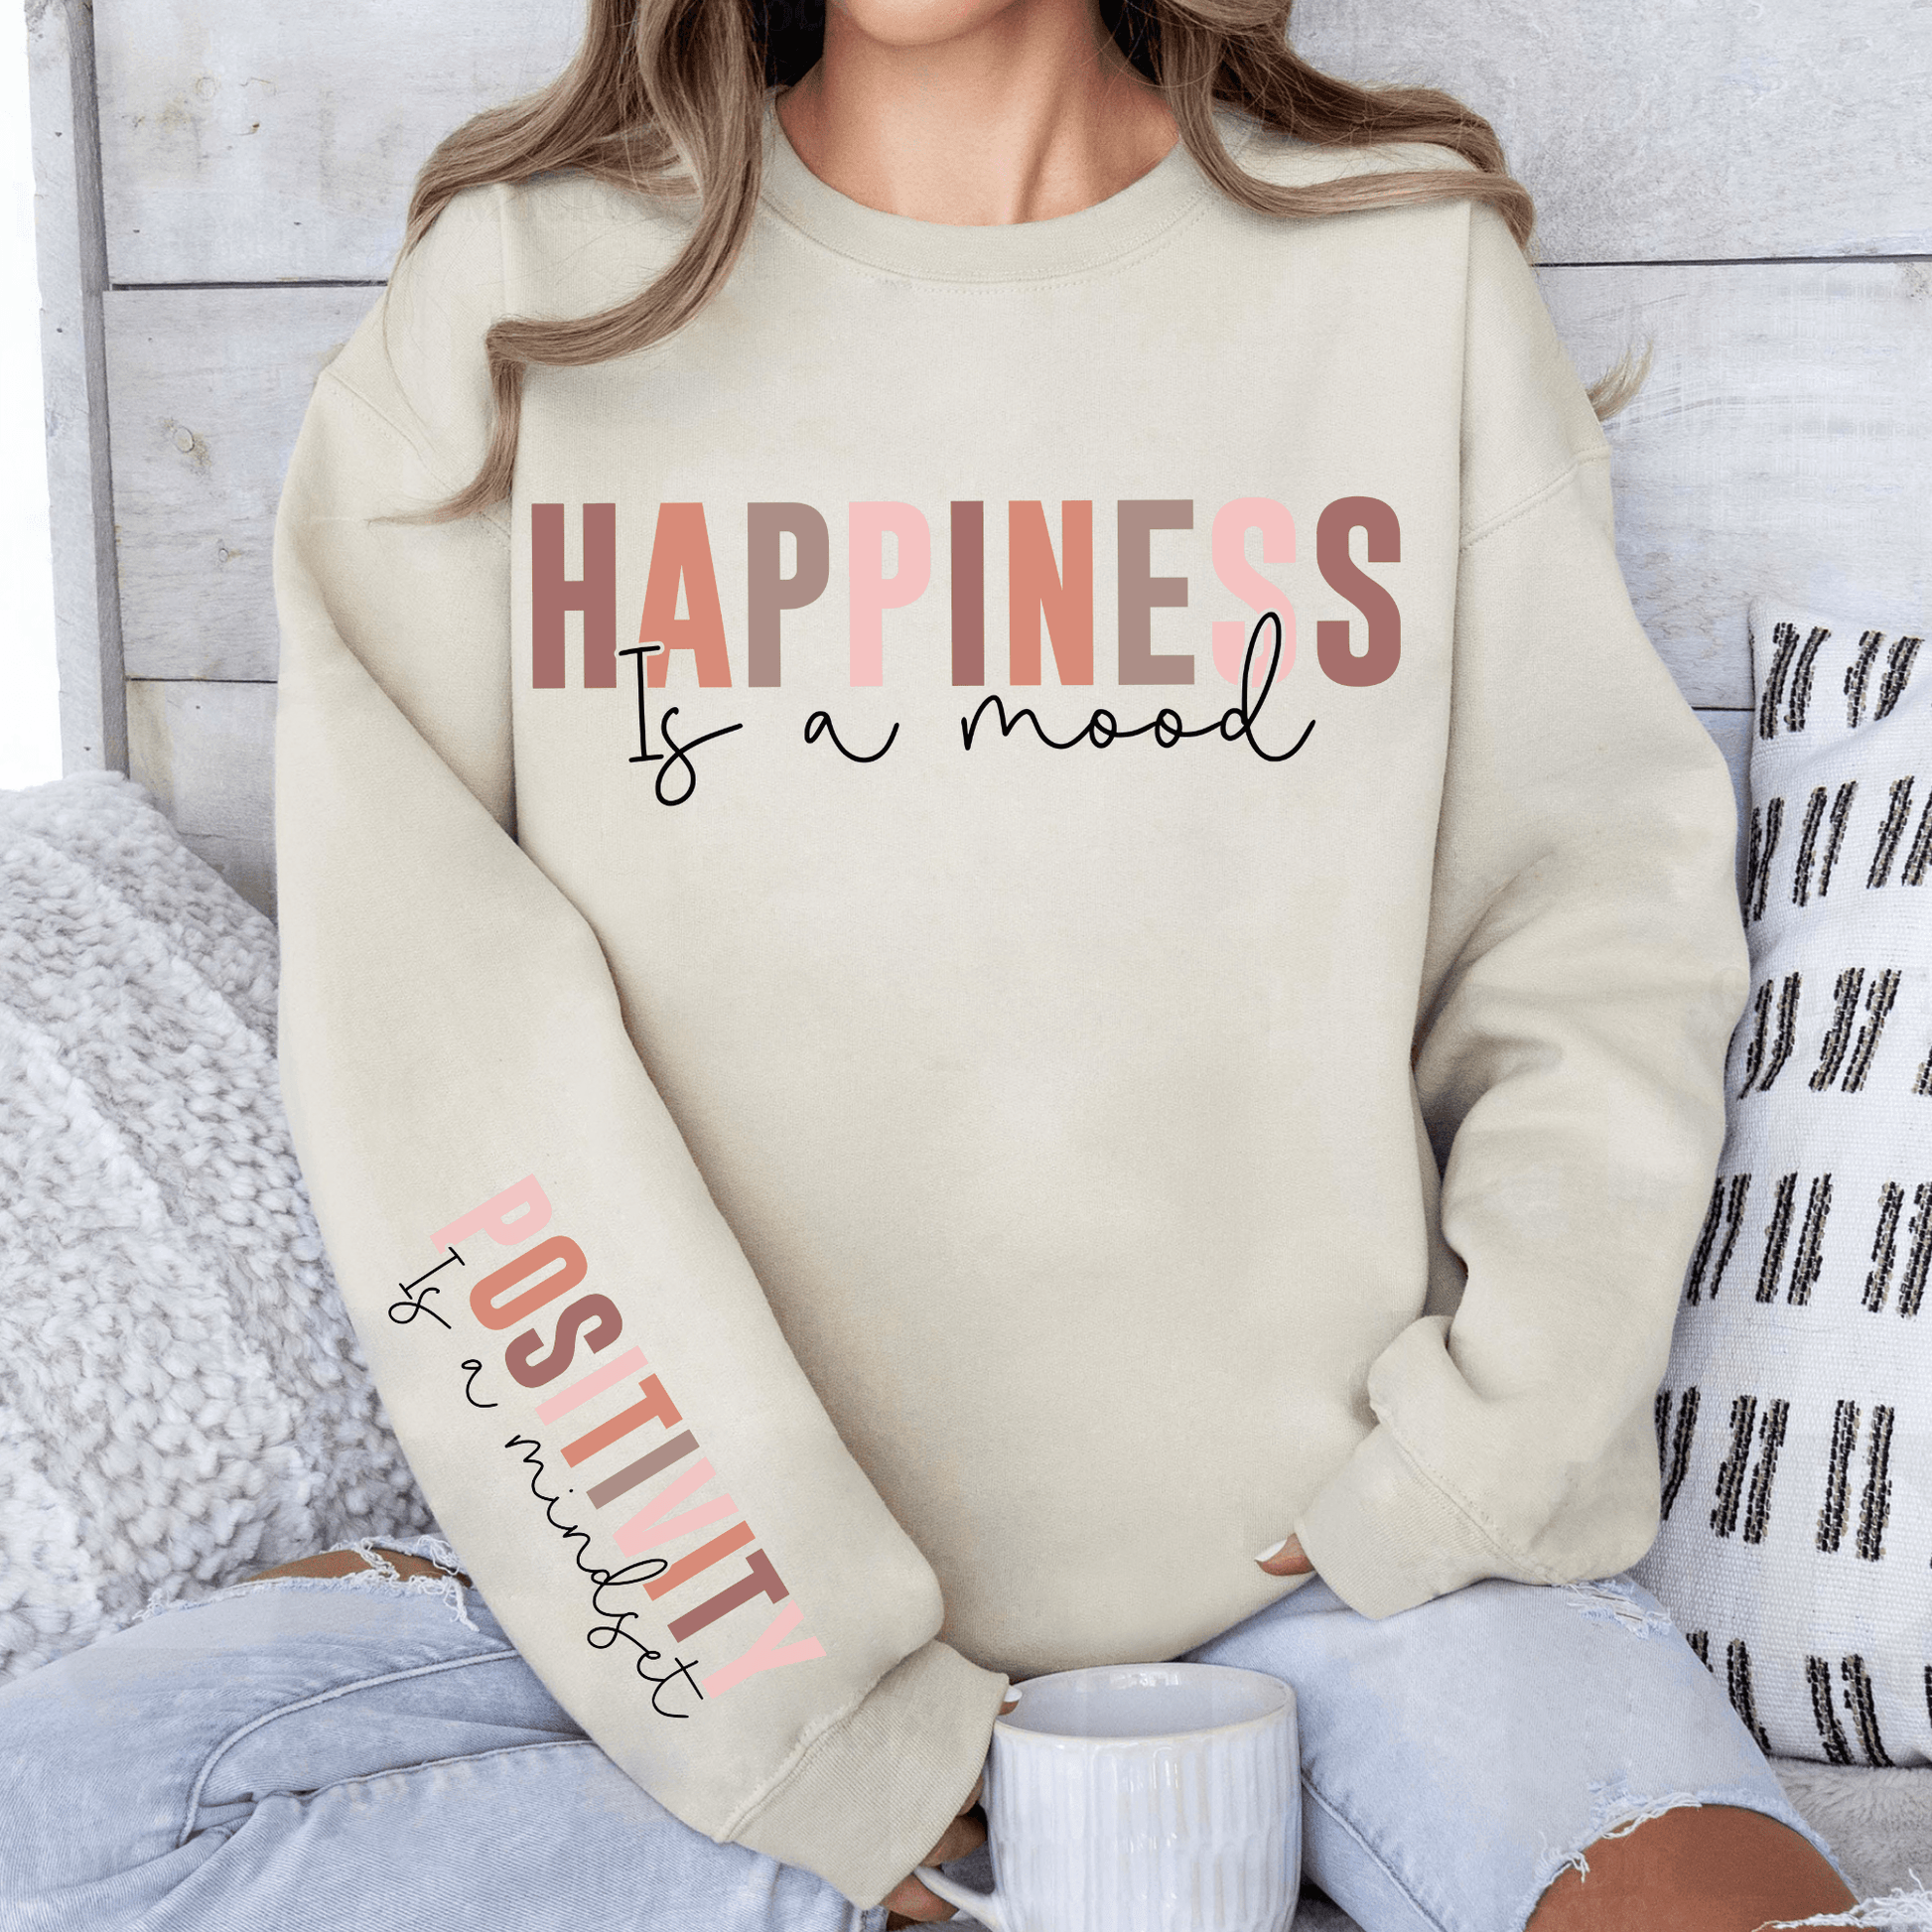 Glück & Positivität Sweatshirt - Inspirierendes Geschenk für Optimisten - Mit Positiver Botschaft - GiftHaus